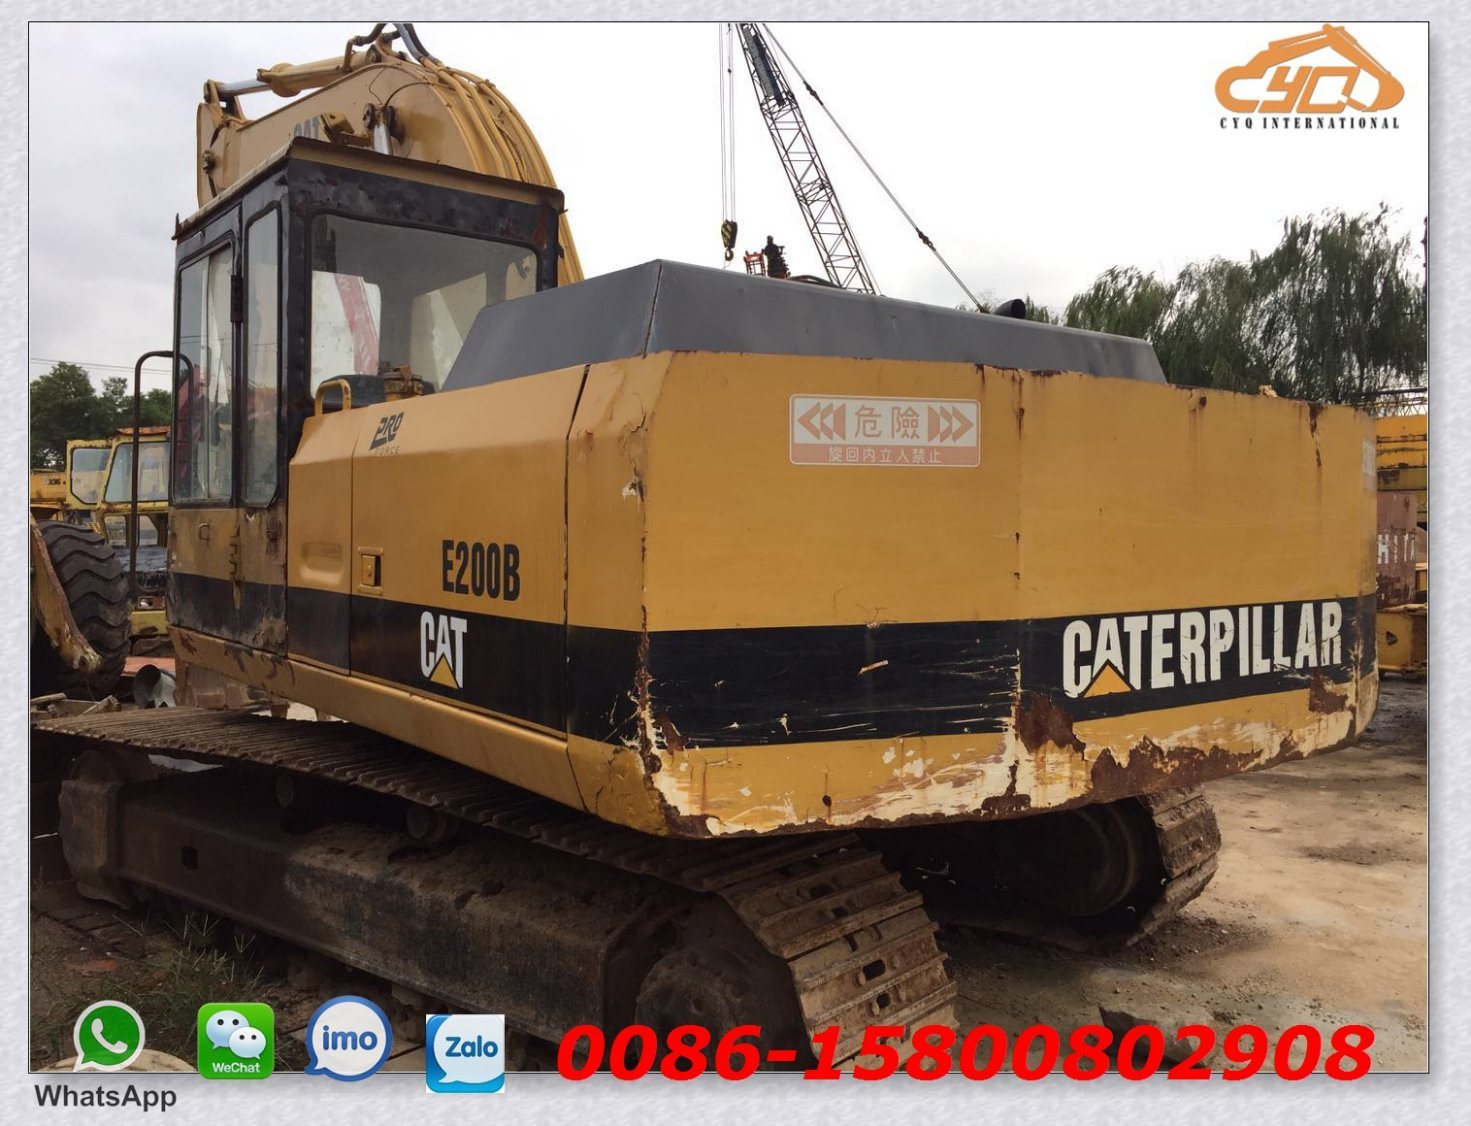 Used Excavator Caterpillar Excavator E200b Used Cat E200b